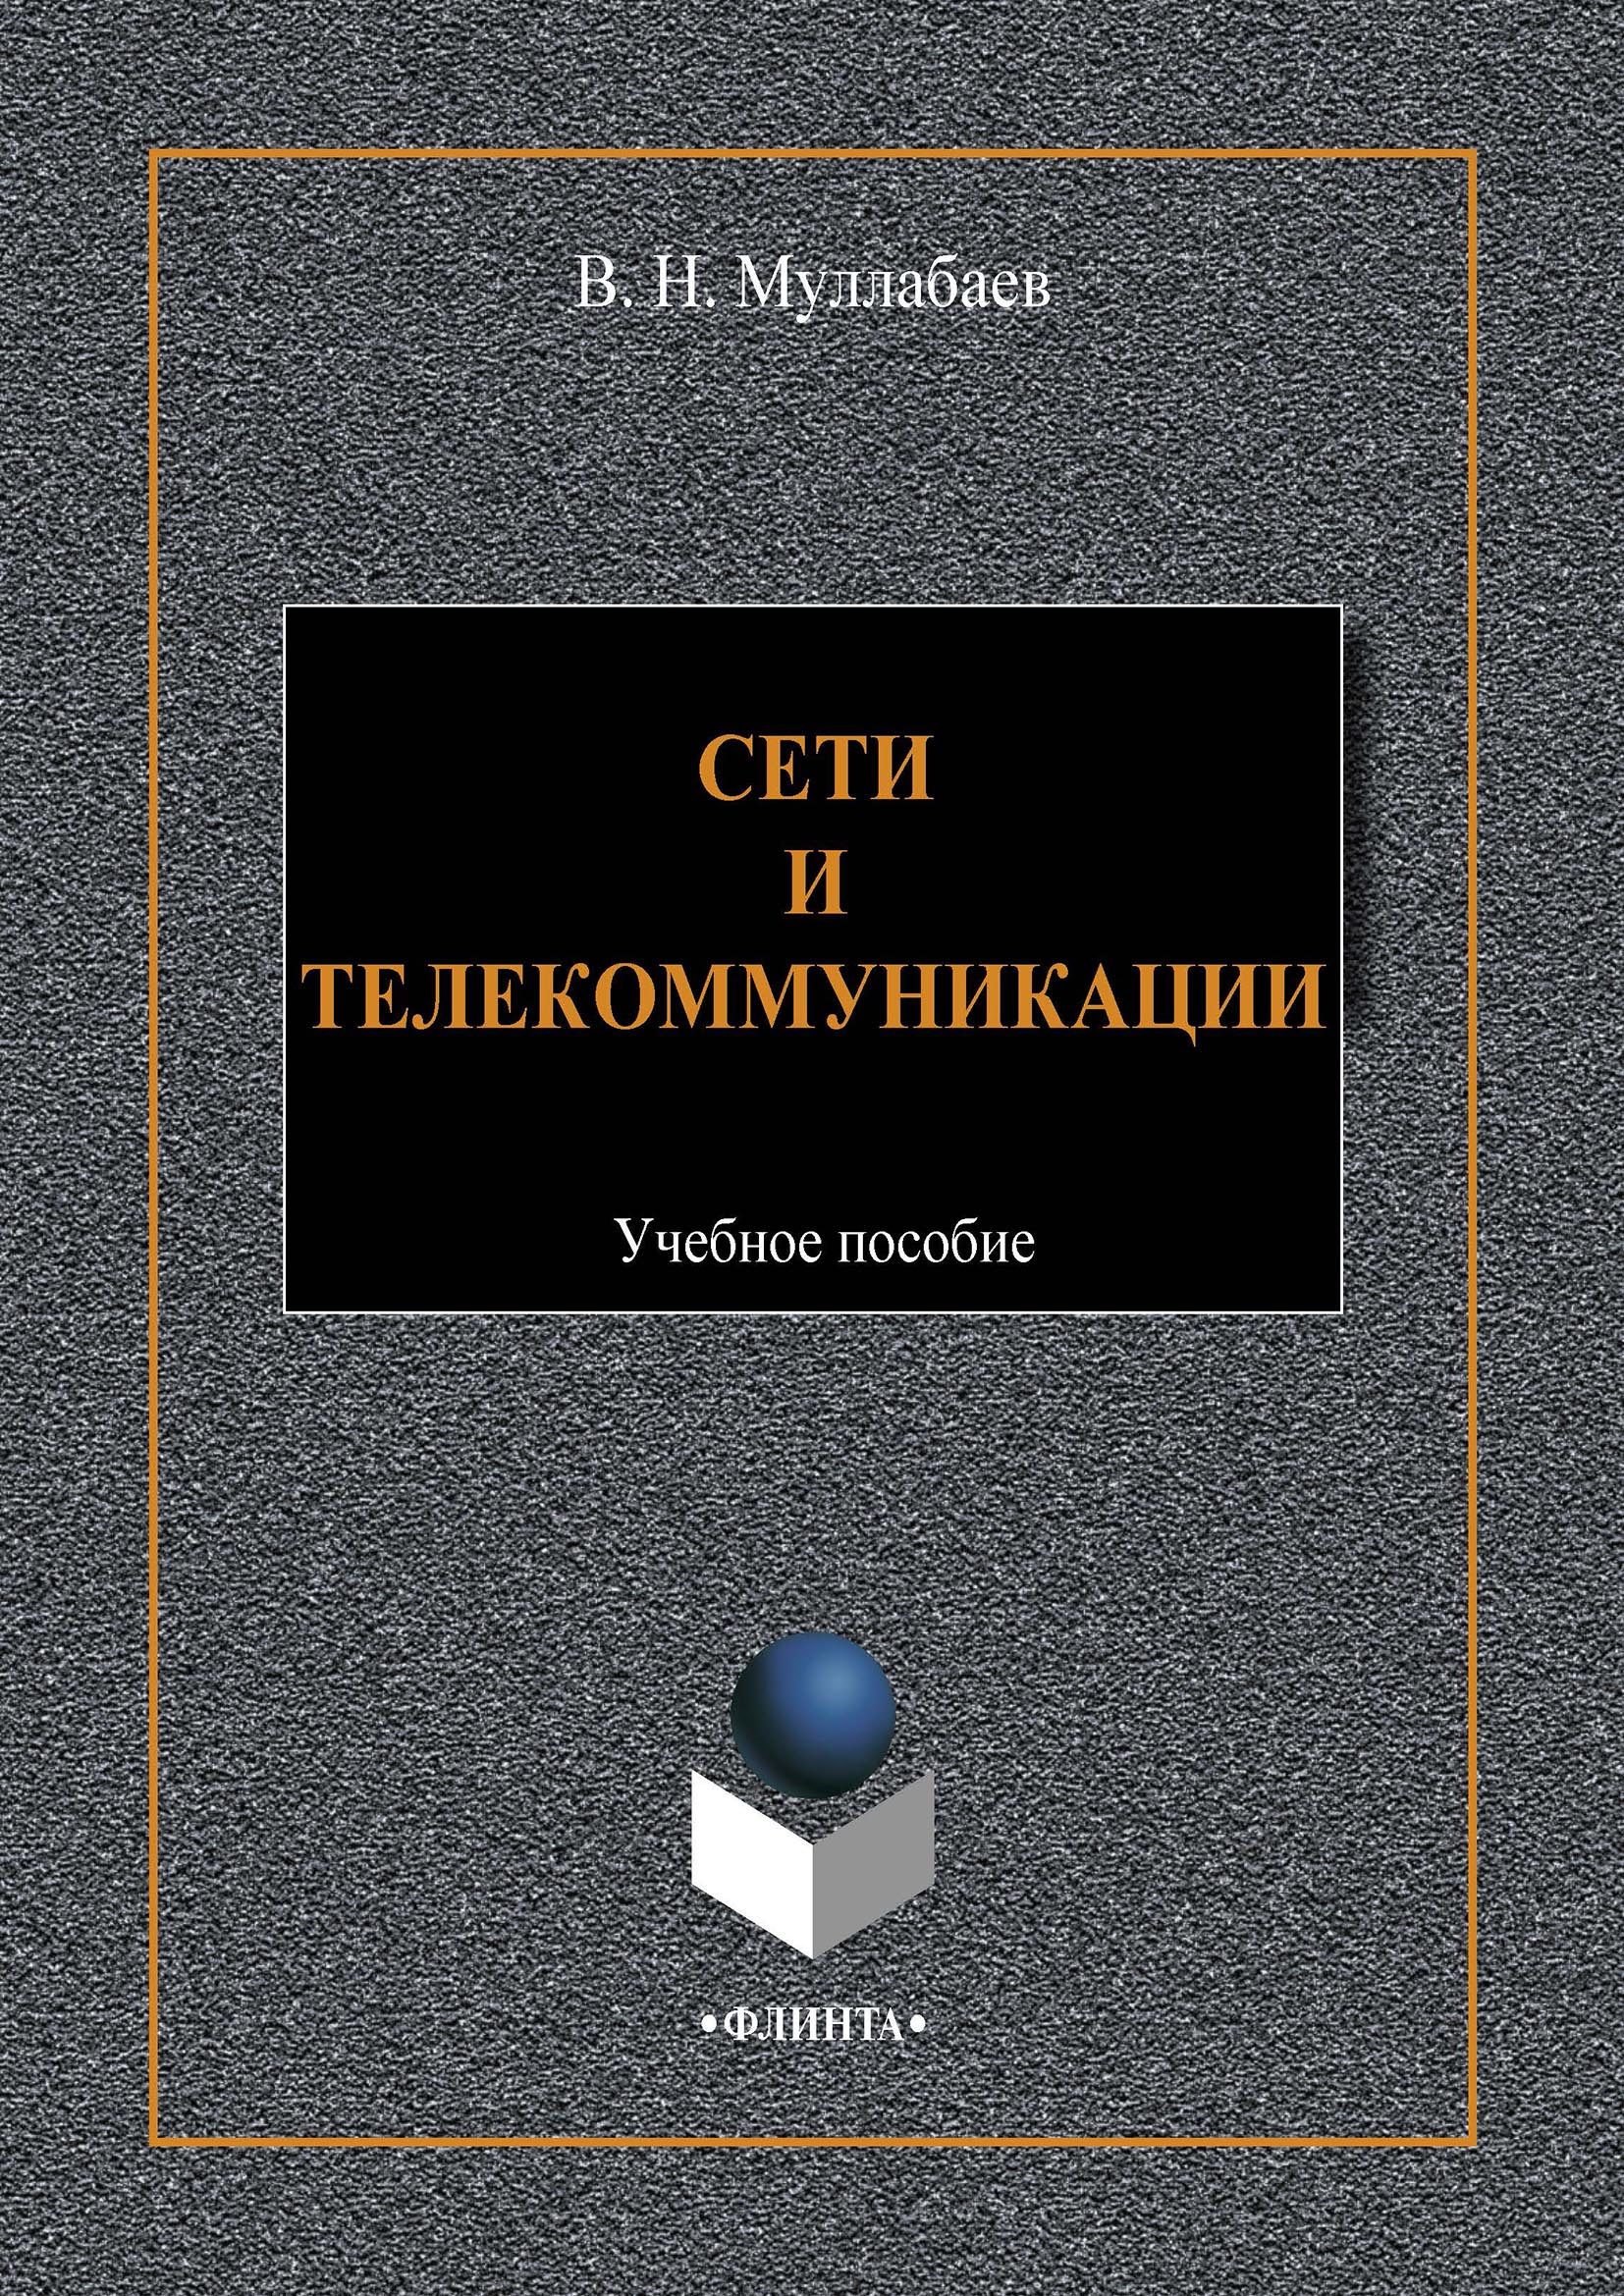 Книга  Сети и телекоммуникации созданная Виктор Муллабаев может относится к жанру ОС и сети, учебники и пособия для вузов. Стоимость электронной книги Сети и телекоммуникации с идентификатором 66172174 составляет 125.00 руб.